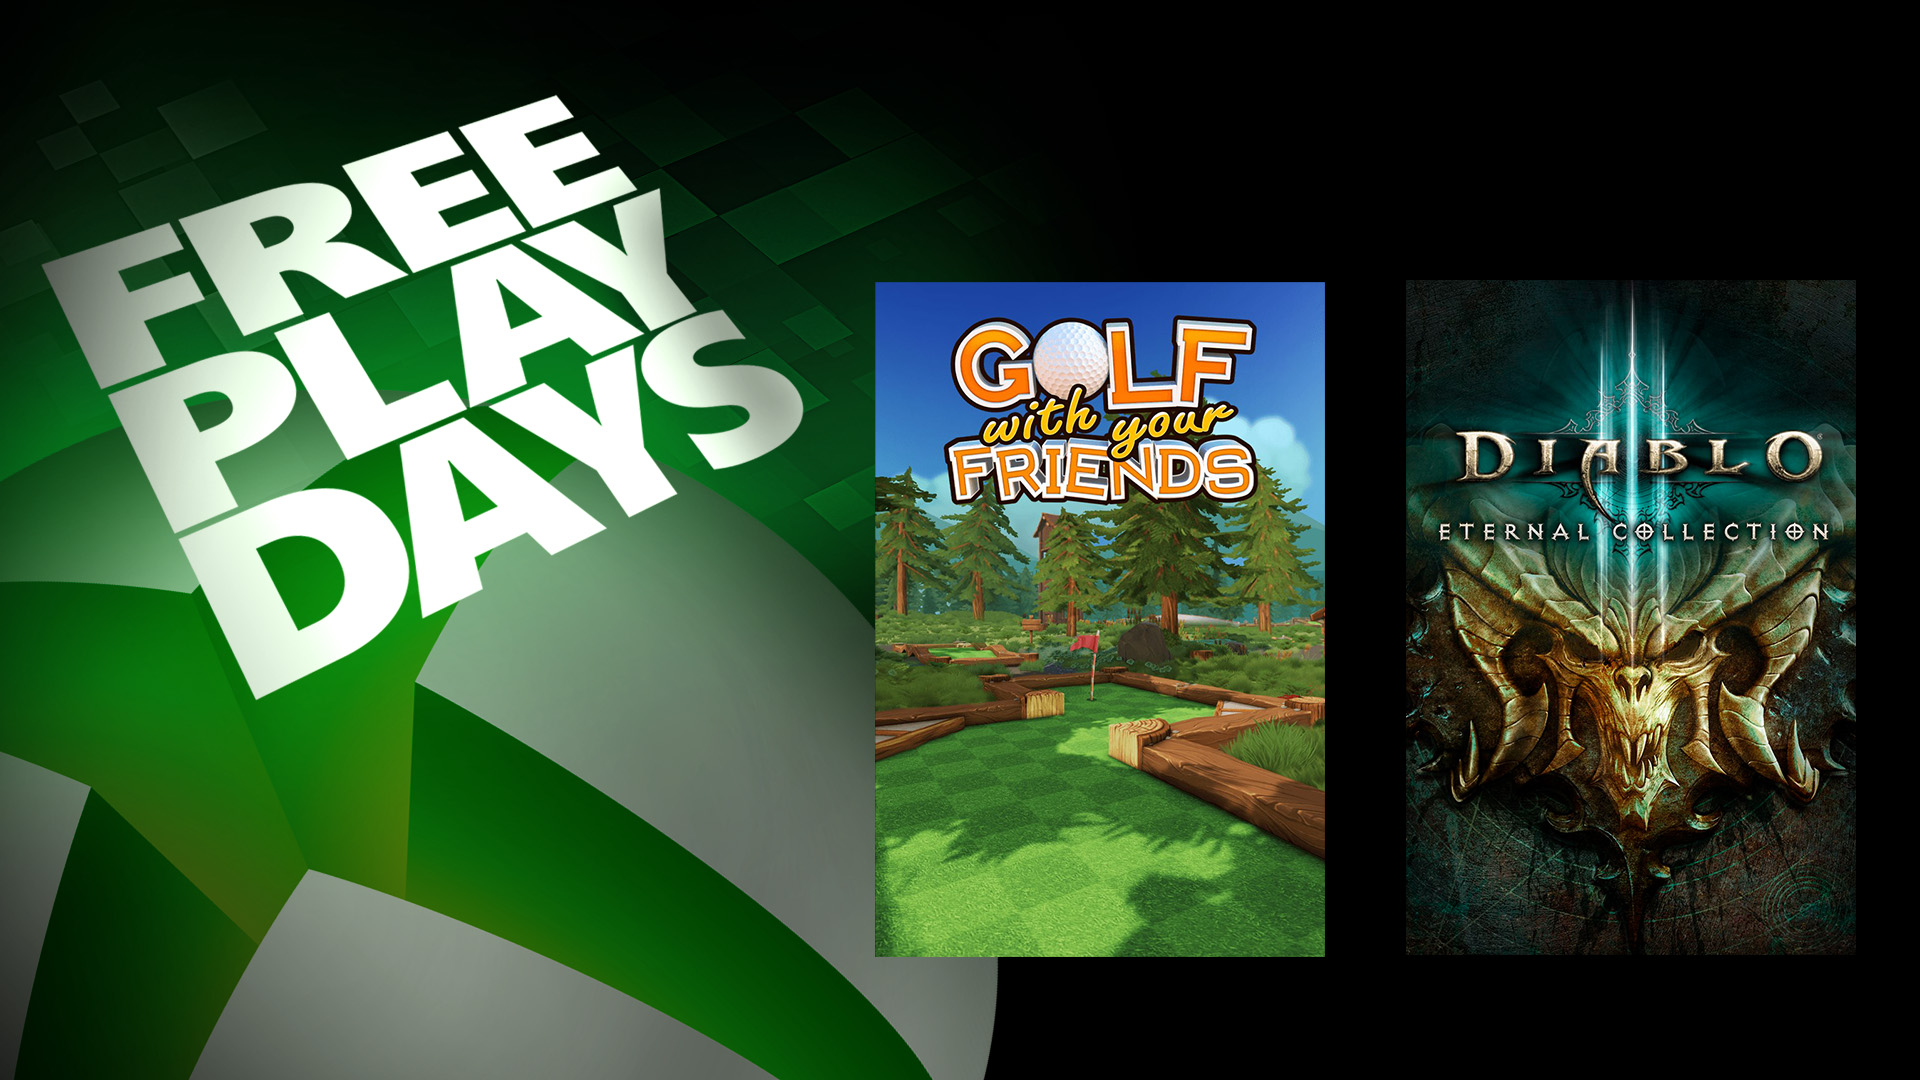 Free Play Days: Estos son los nuevos juegos gratis este fin de semana - Los nuevos Free Play Days vienen con el objetivo de hacer nuestro fin de semana más divertido.